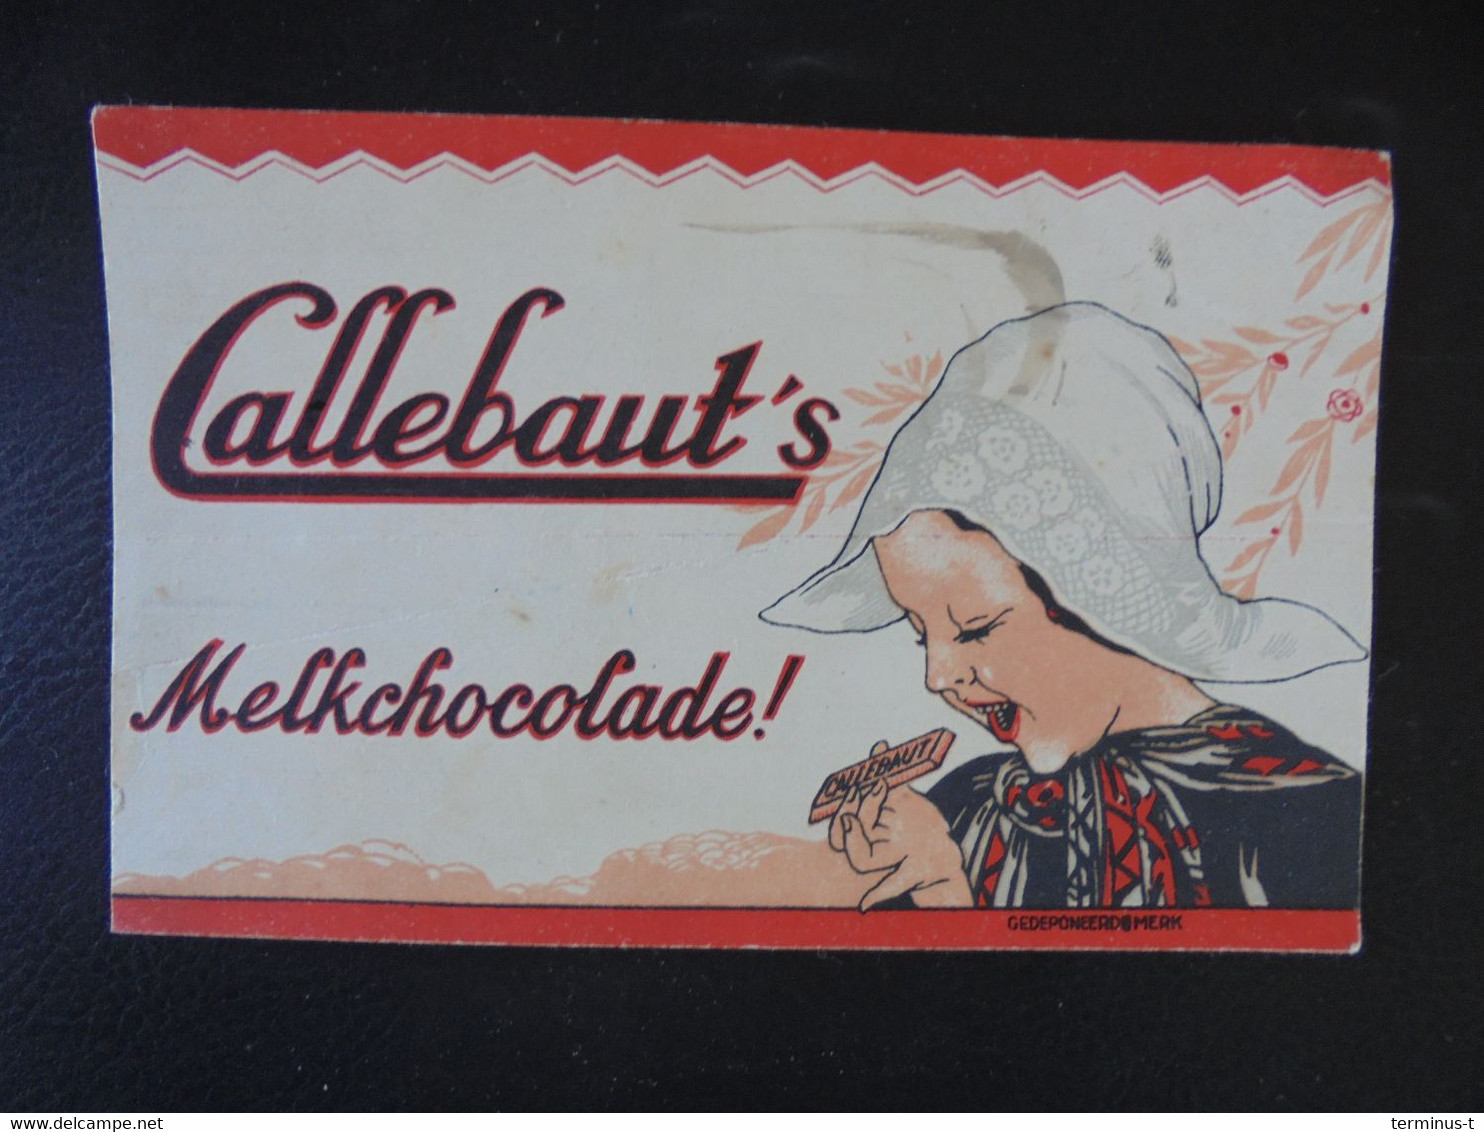 CALLEBAUT's Melkchocolade - Cocoa & Chocolat